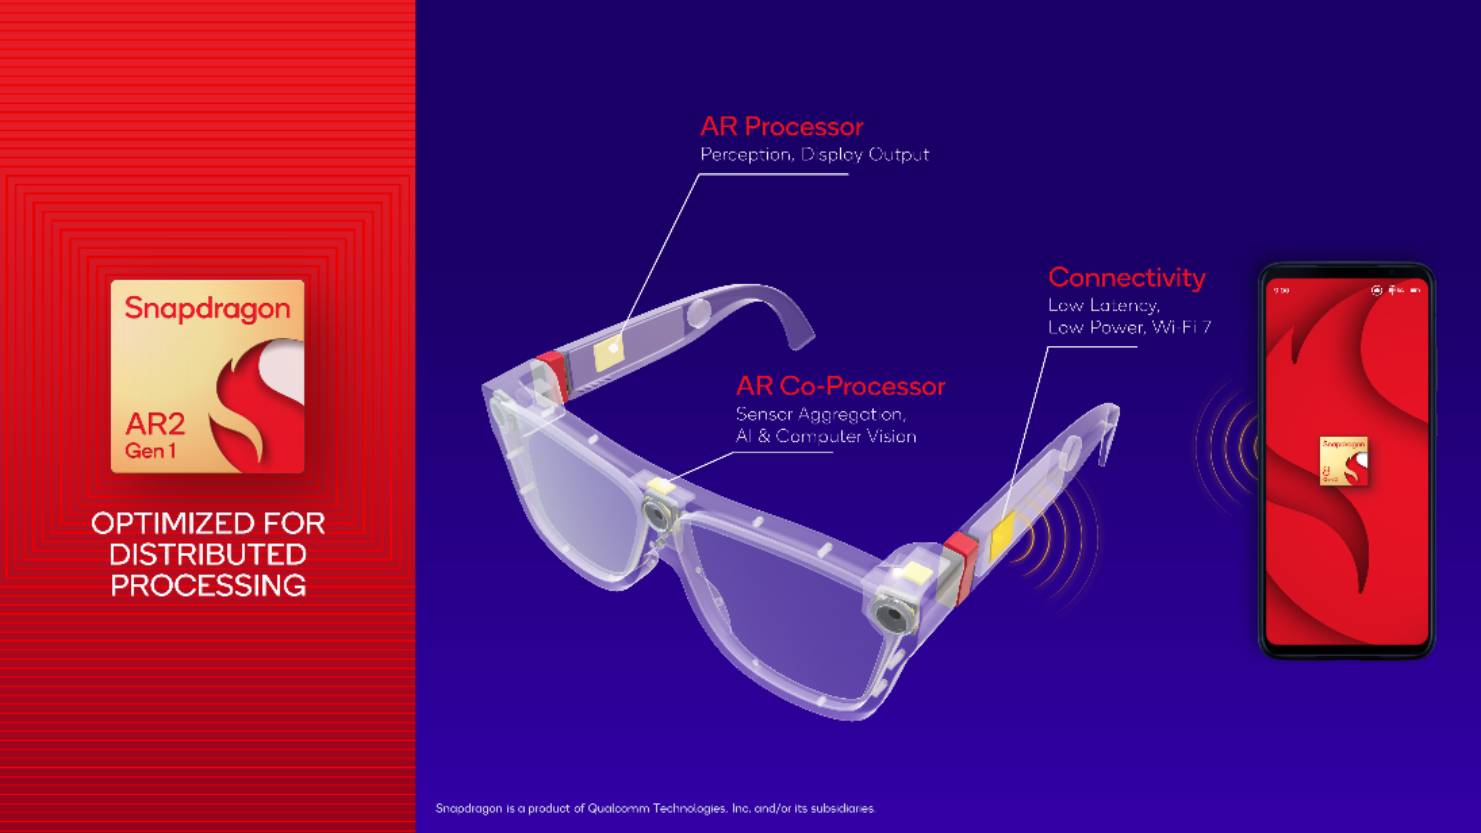 Pronto tus lentes convencionales podrán funcionar con Realidad Aumentada